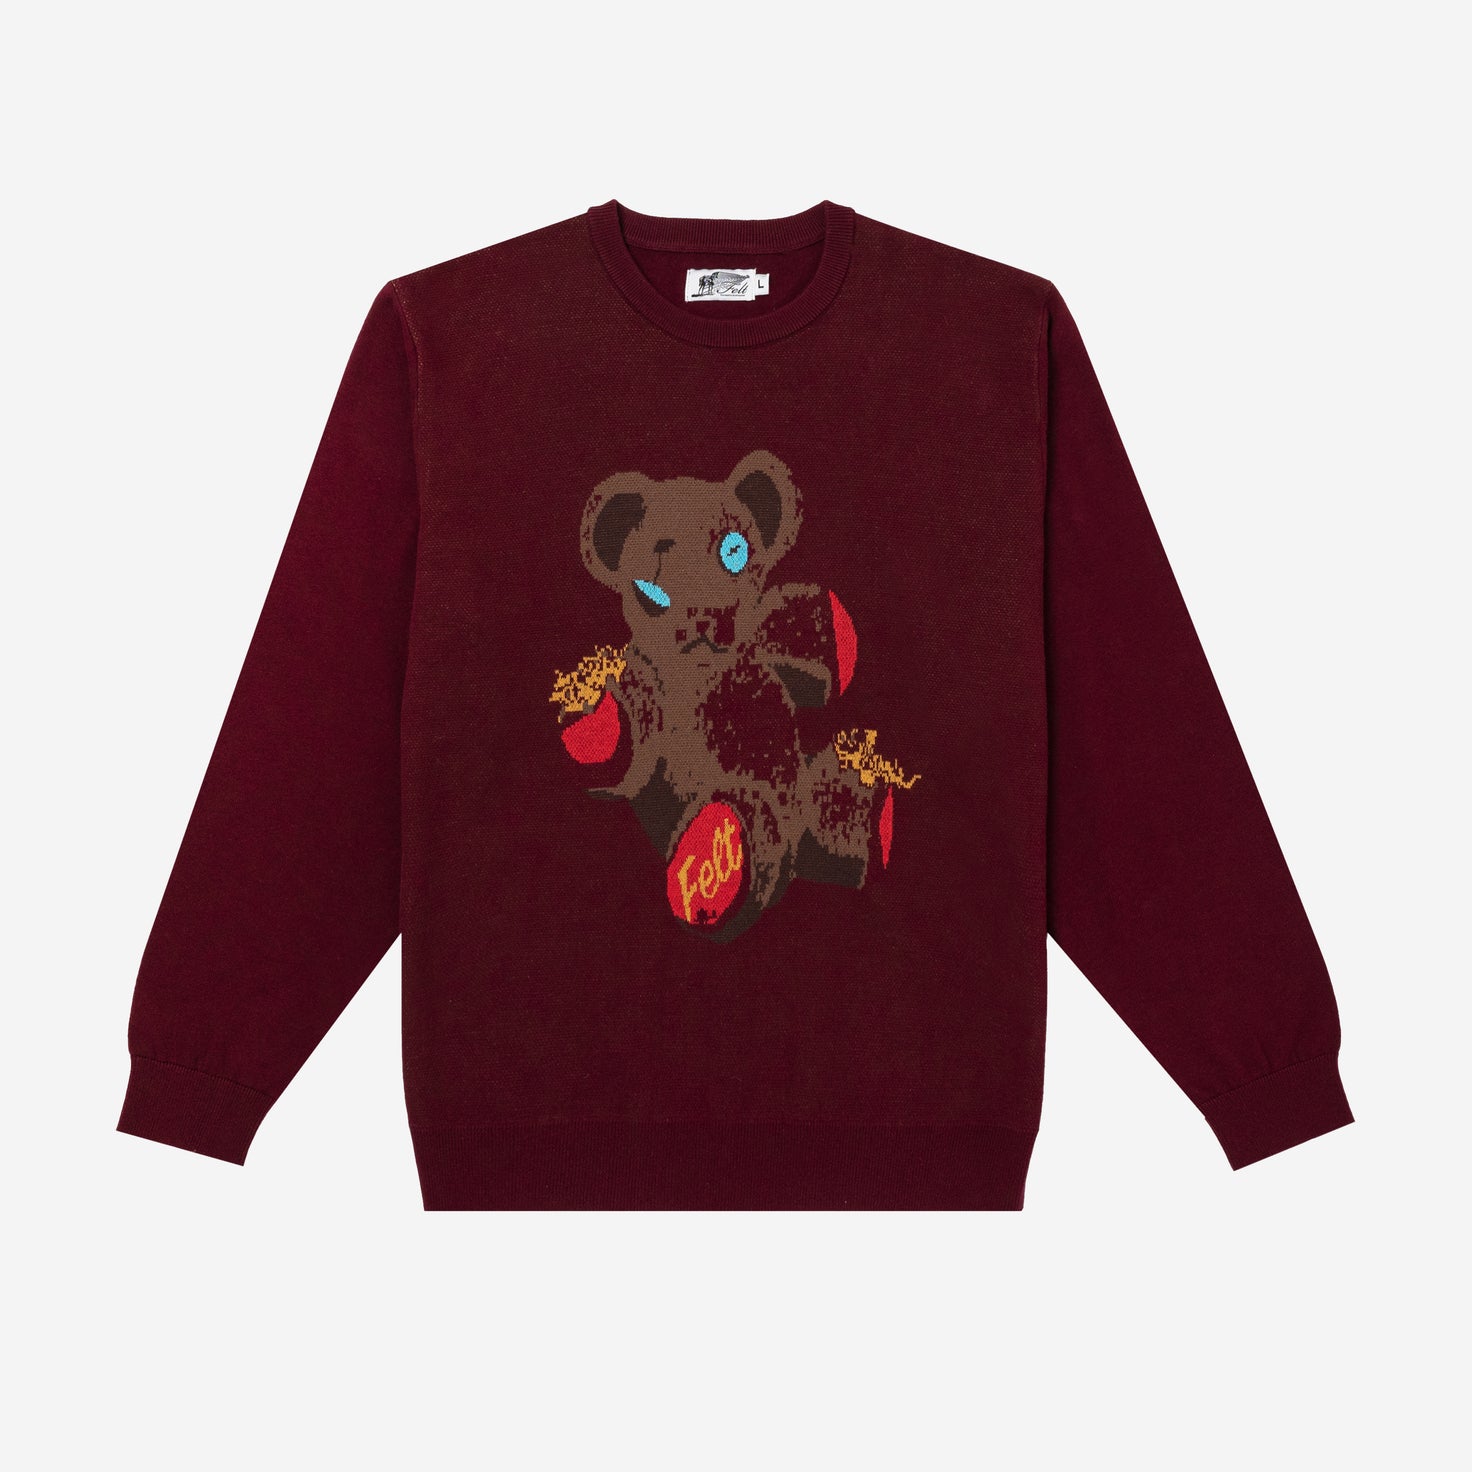 Poor Bear Knit Sweater